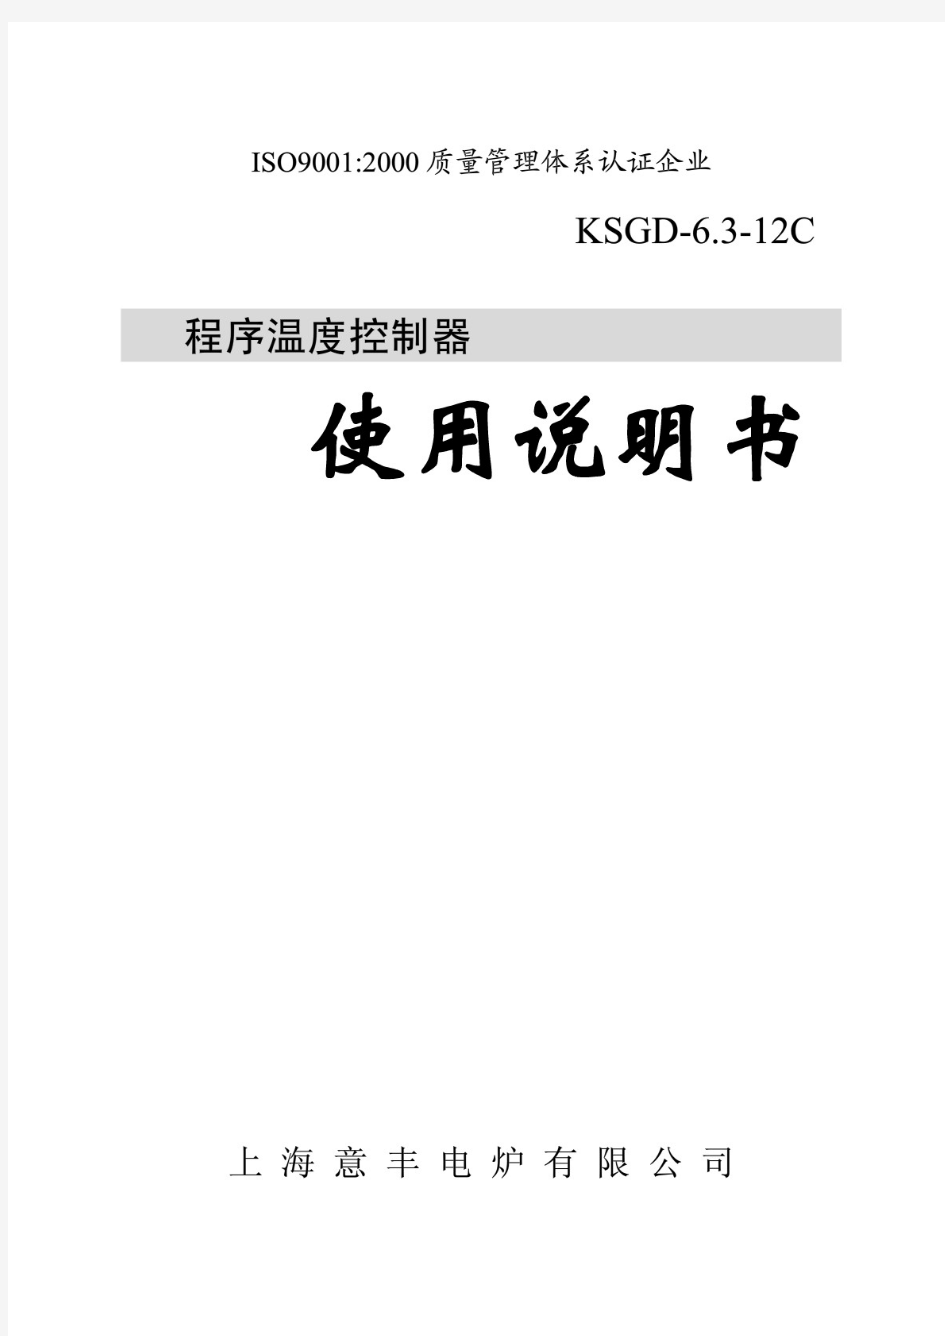 KSGD-6 3-12C(518P)电阻炉温度控制器使用说明书